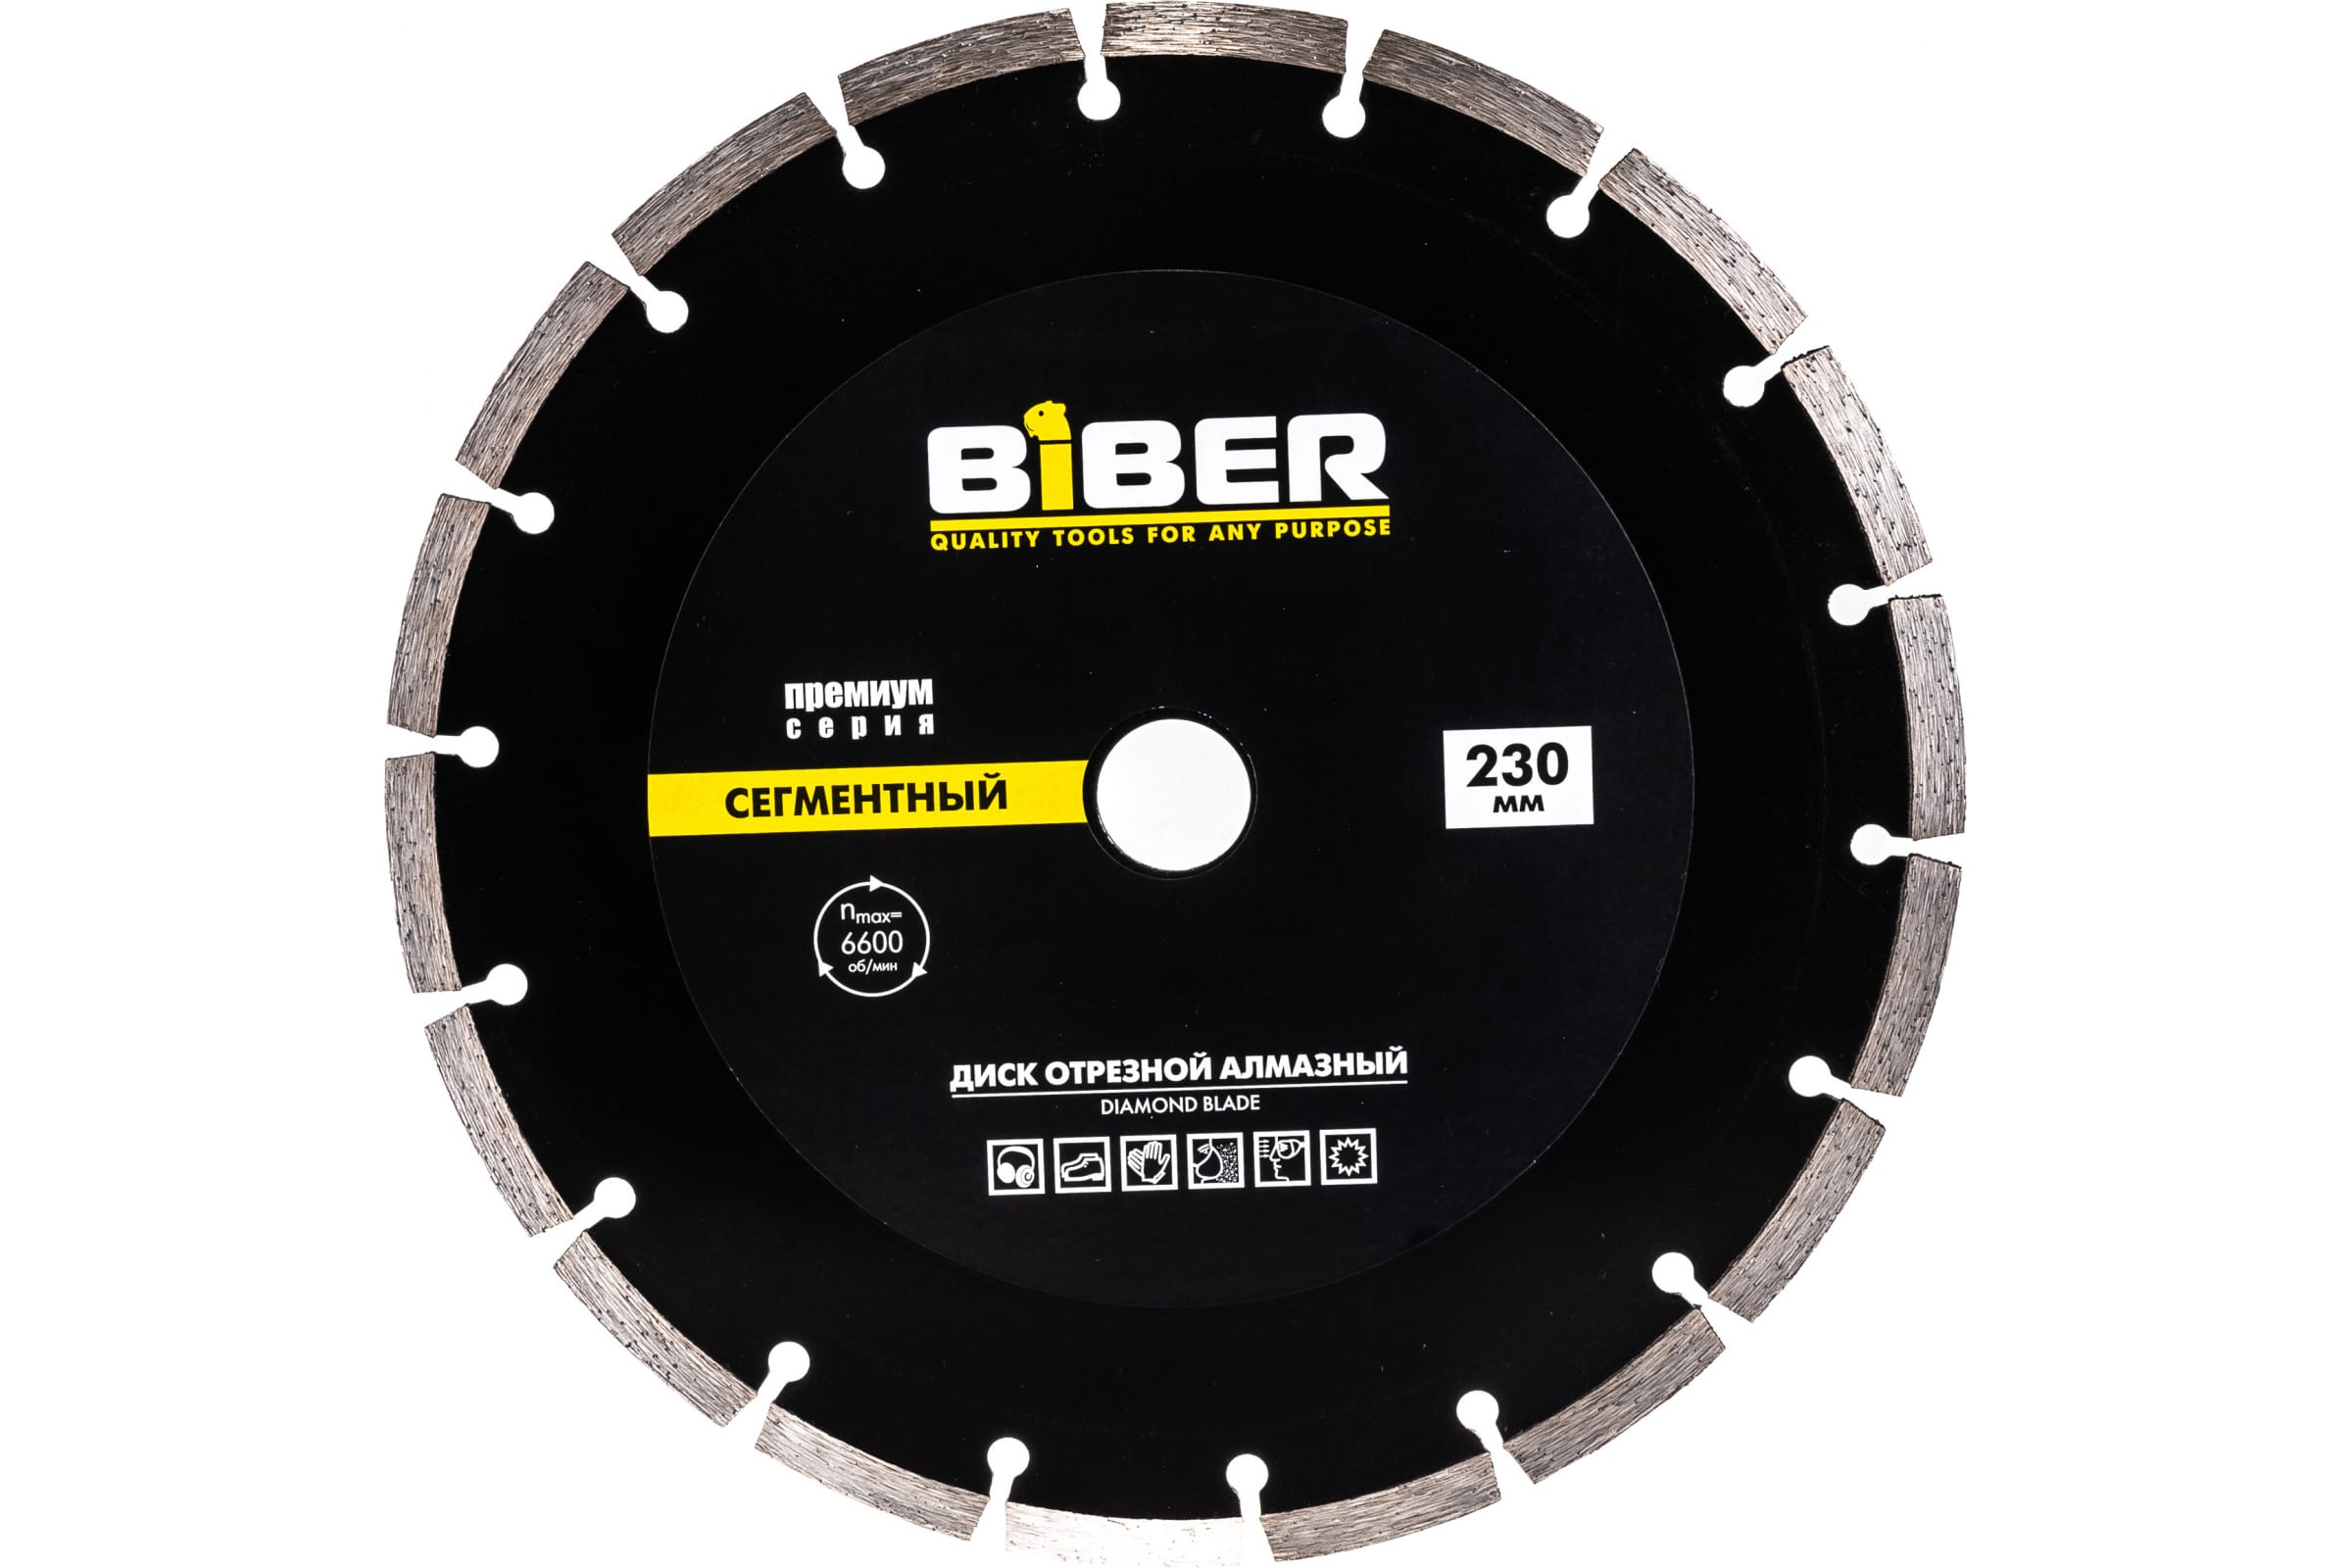 Biber Диск алмазный сегментный Премиум 230мм 70266 тов-039554 диск пильный biber